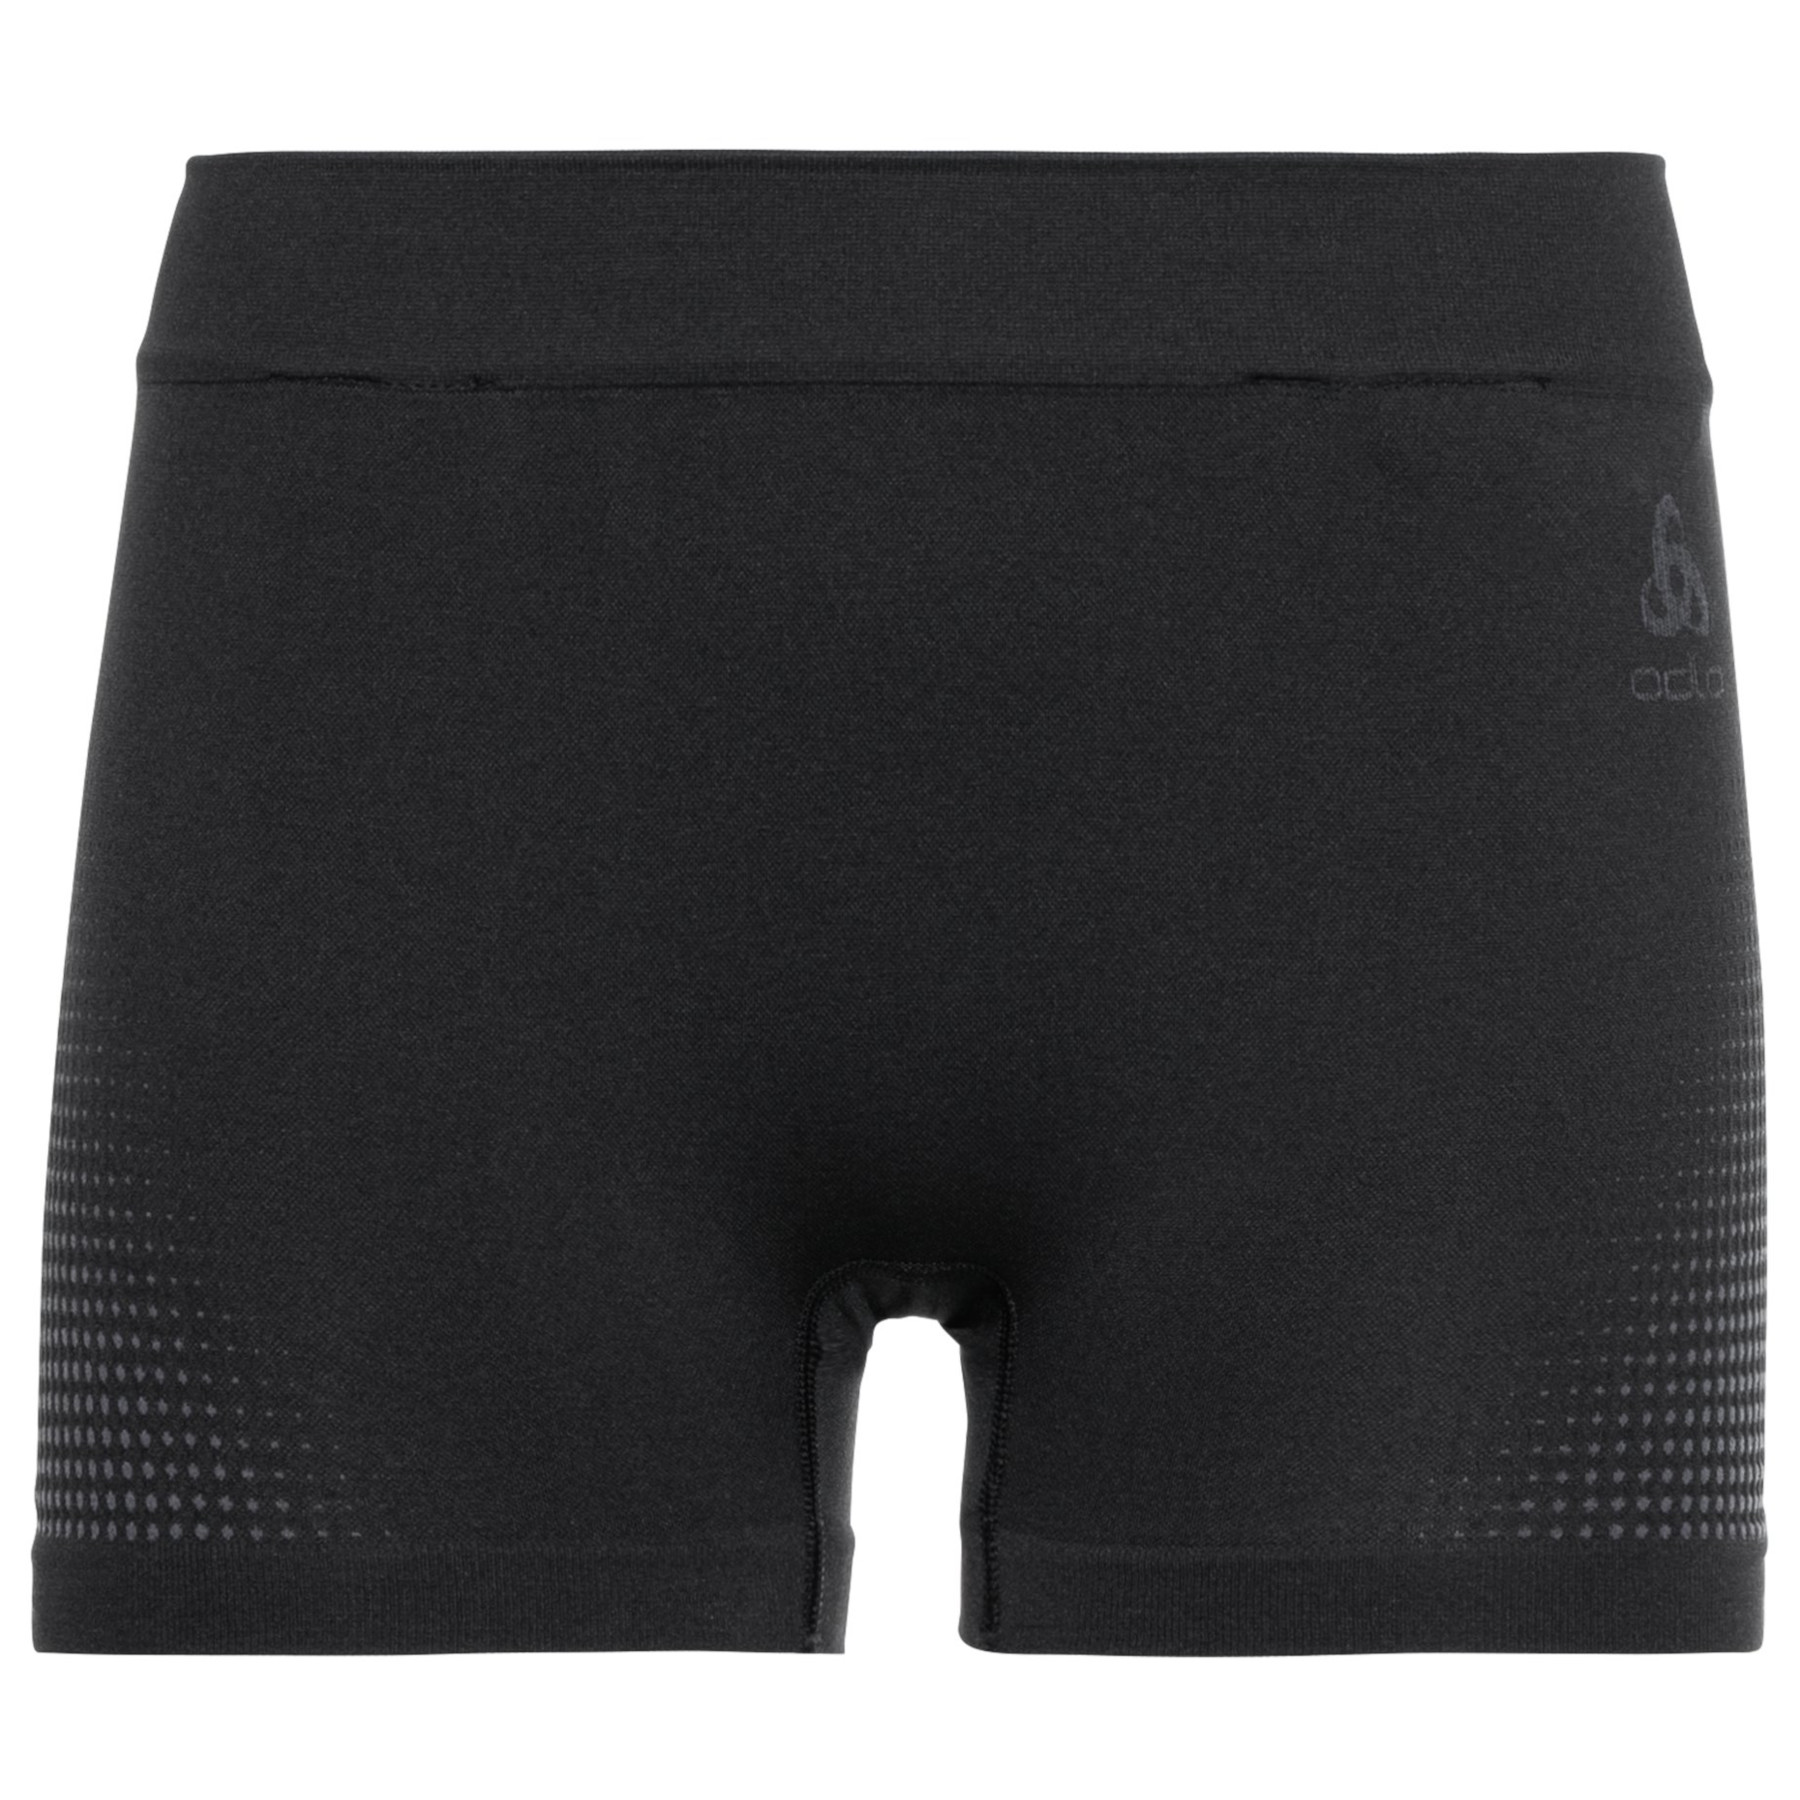 Produktbild von Odlo Performance Warm Panty Damen - schwarz - new odlo graphite grey